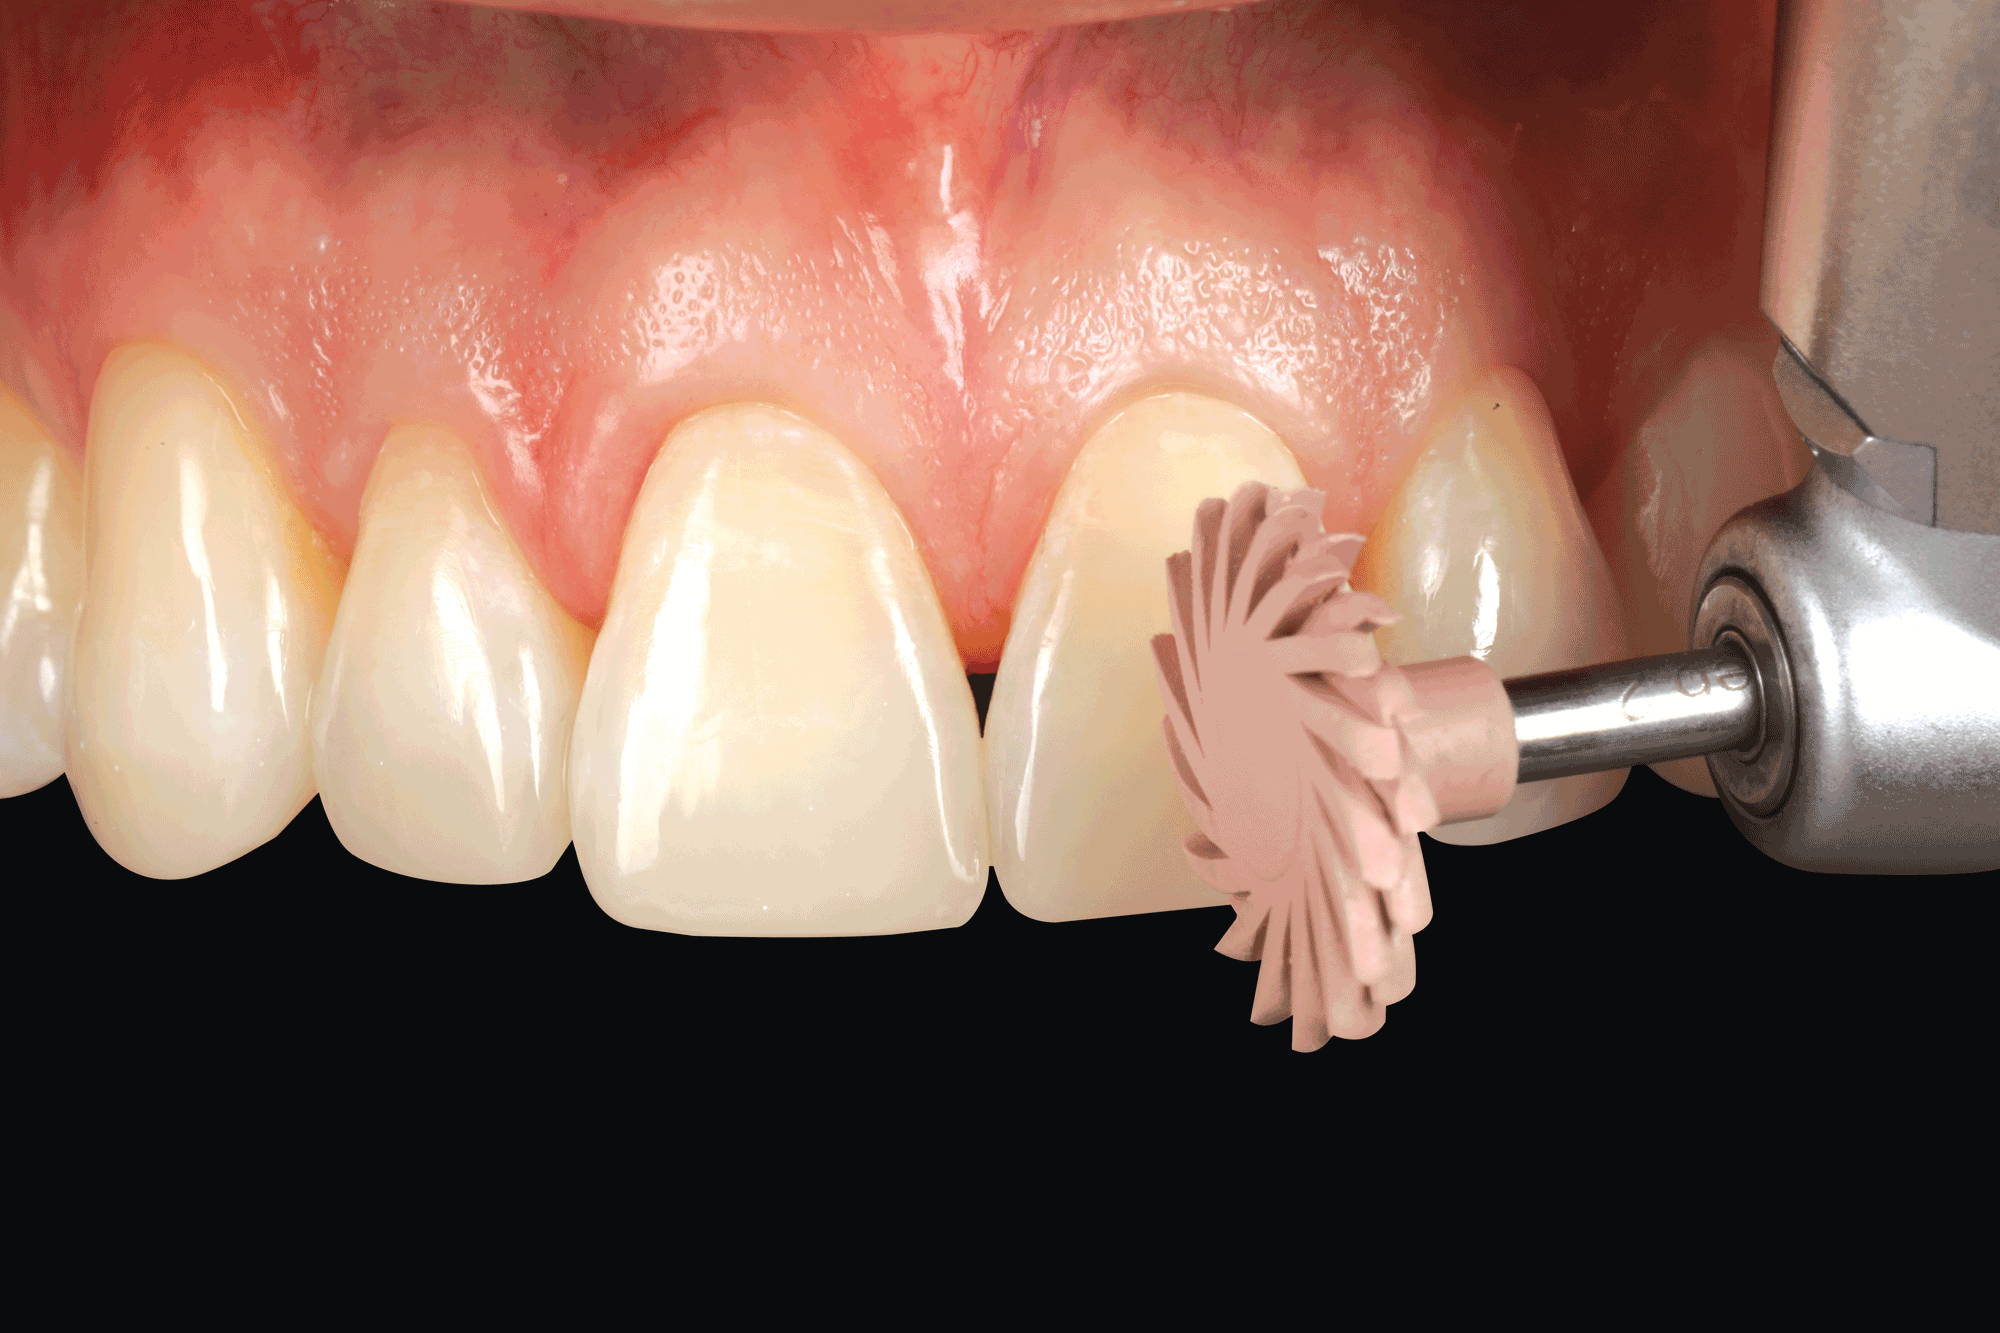 pink polisher polishing central incisor